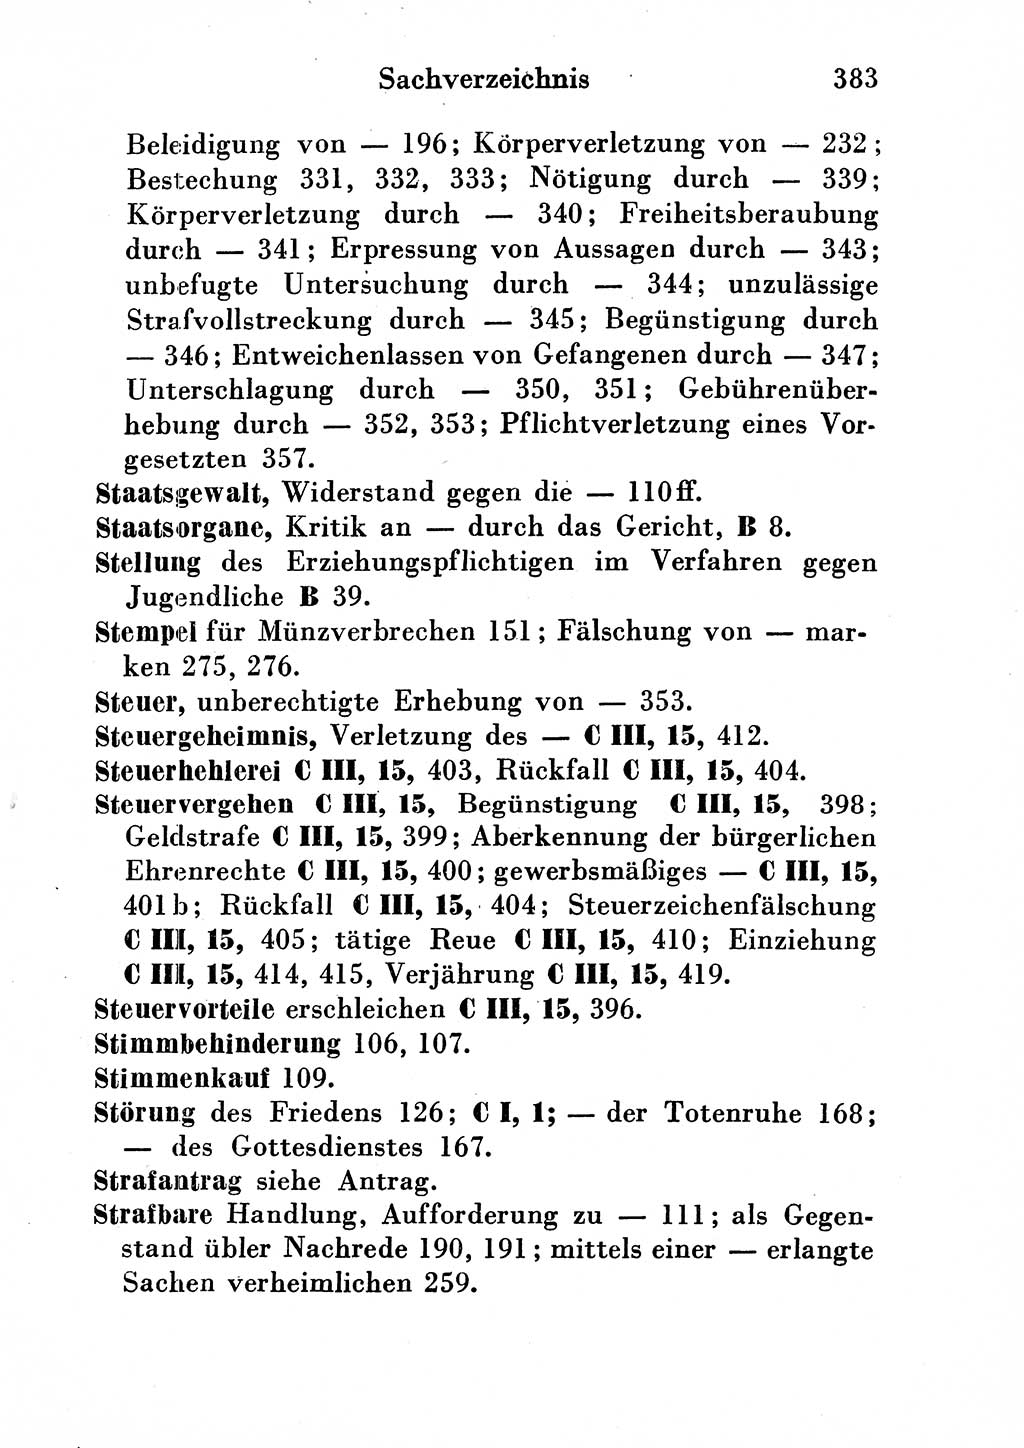 Strafgesetzbuch (StGB) und andere Strafgesetze [Deutsche Demokratische Republik (DDR)] 1954, Seite 383 (StGB Strafges. DDR 1954, S. 383)